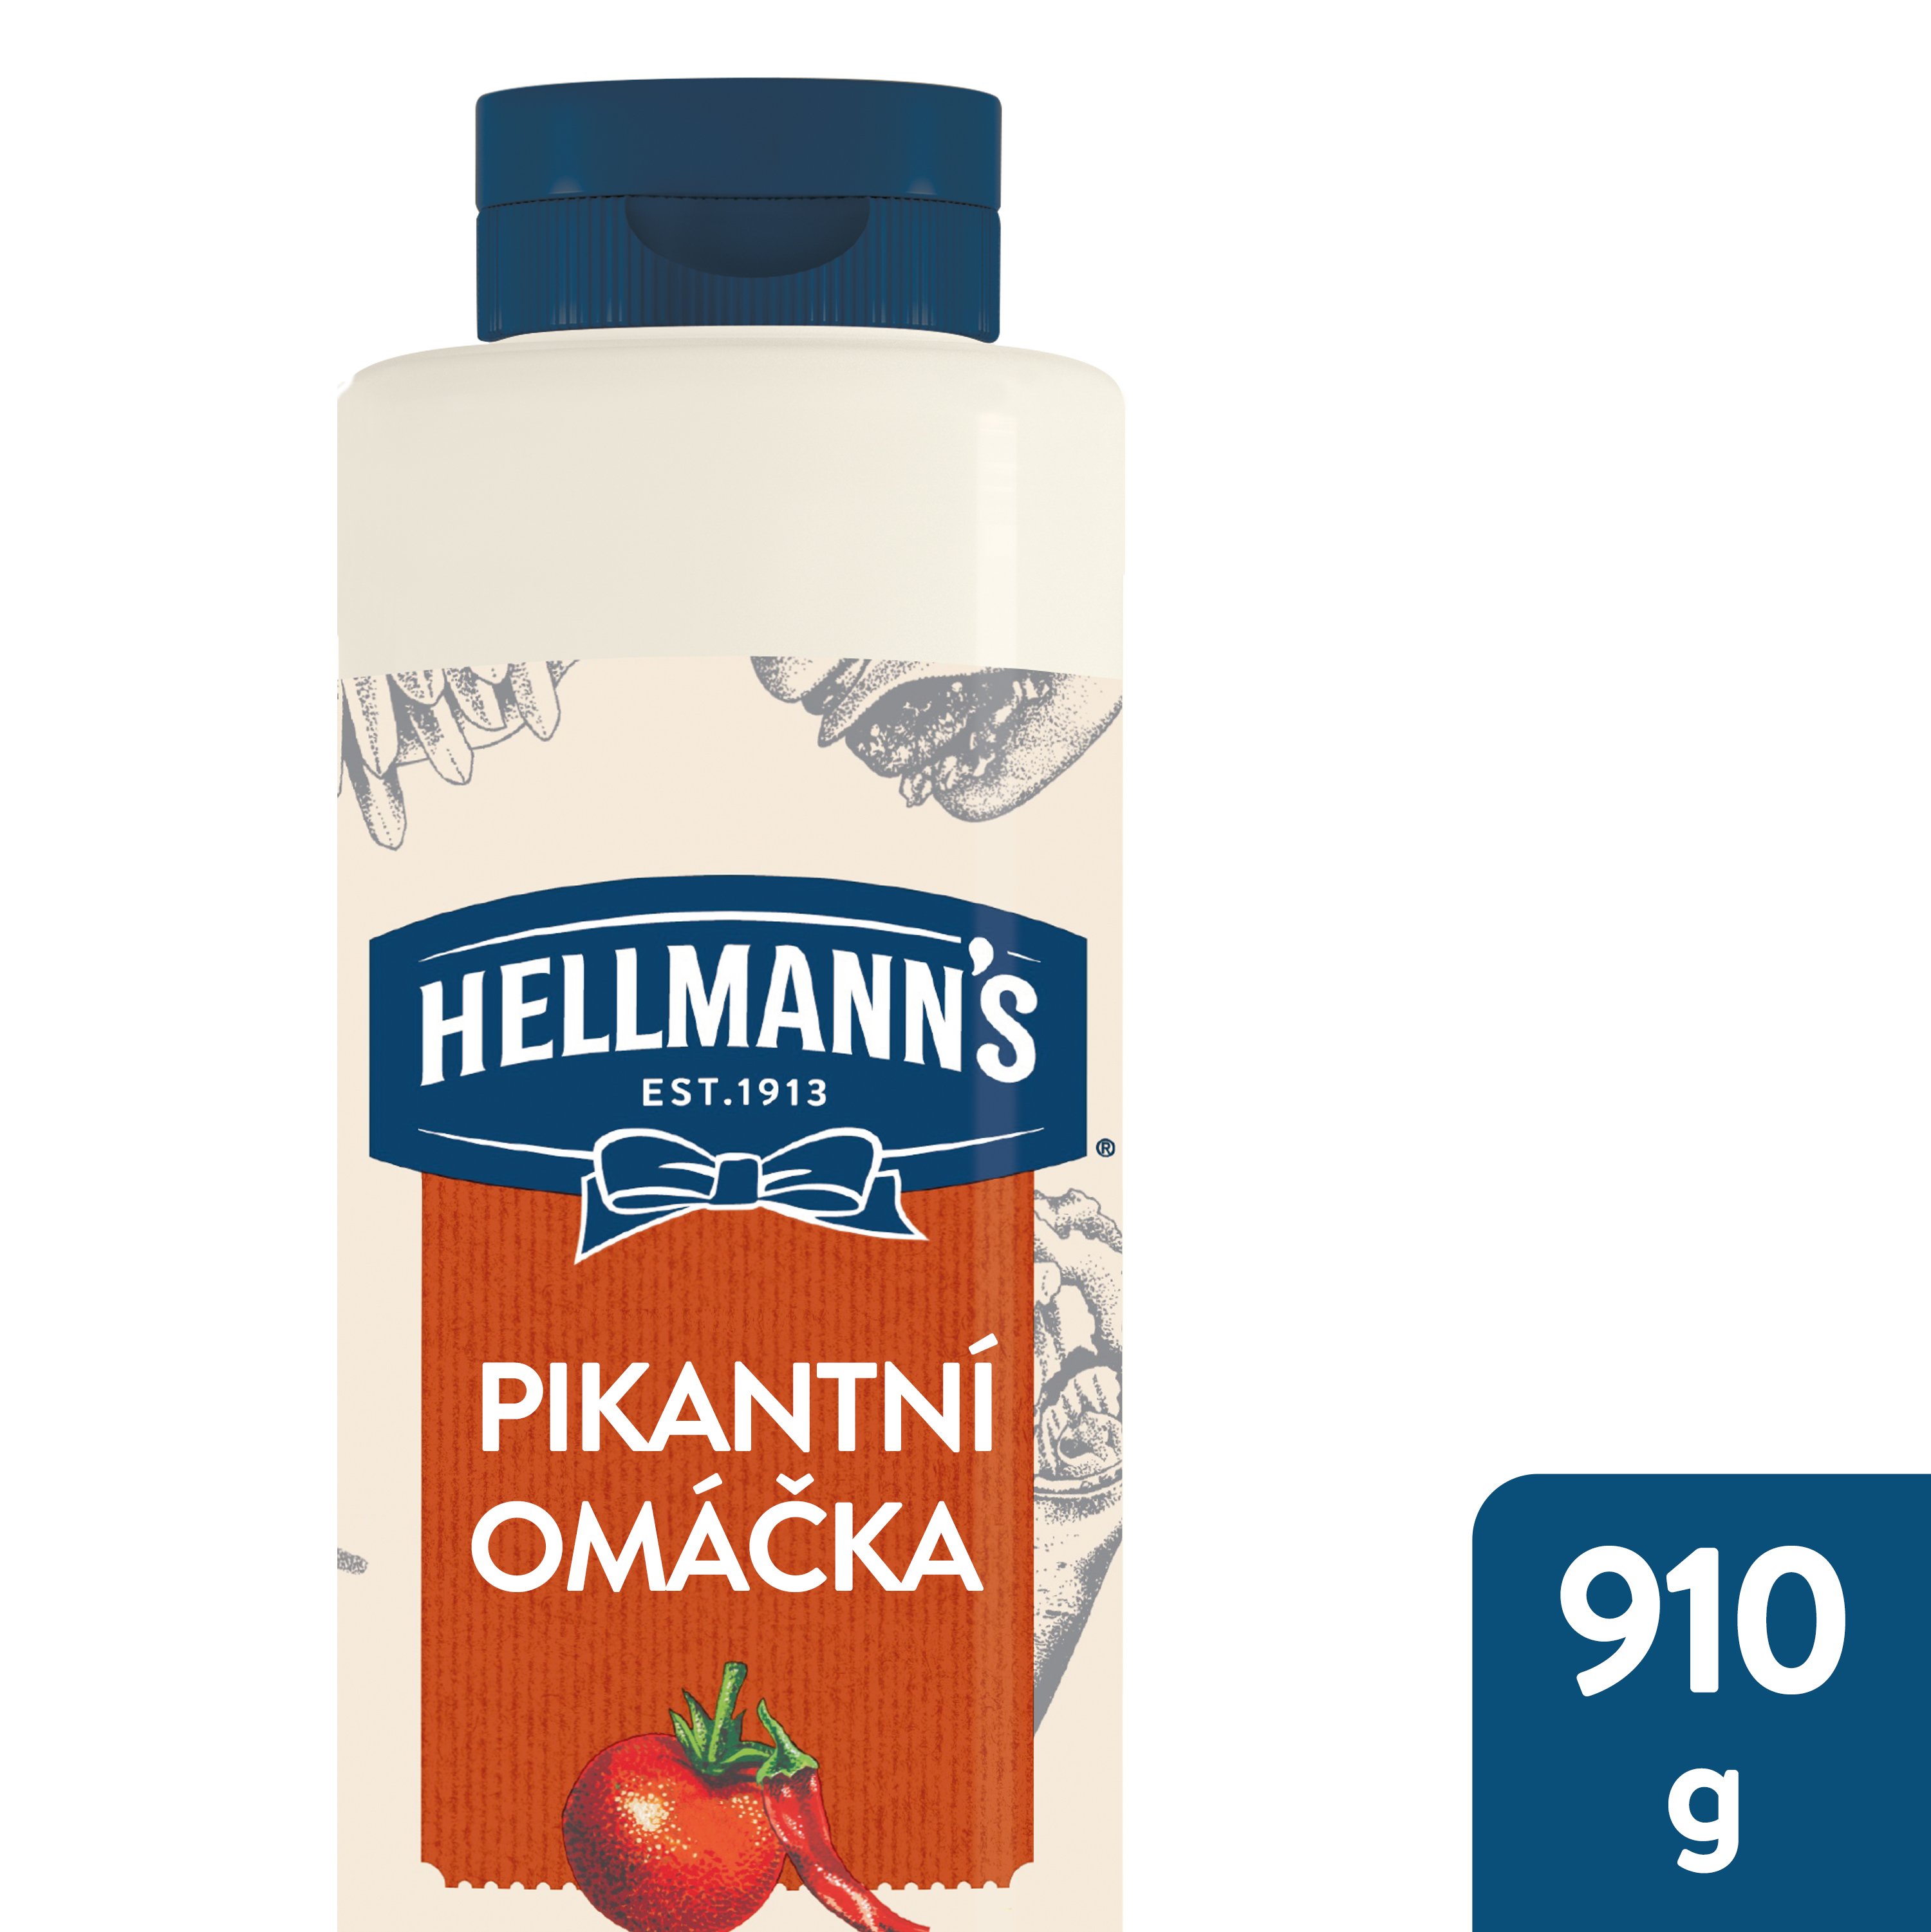 Hellmann's Pikantní omáčka 910 g - 